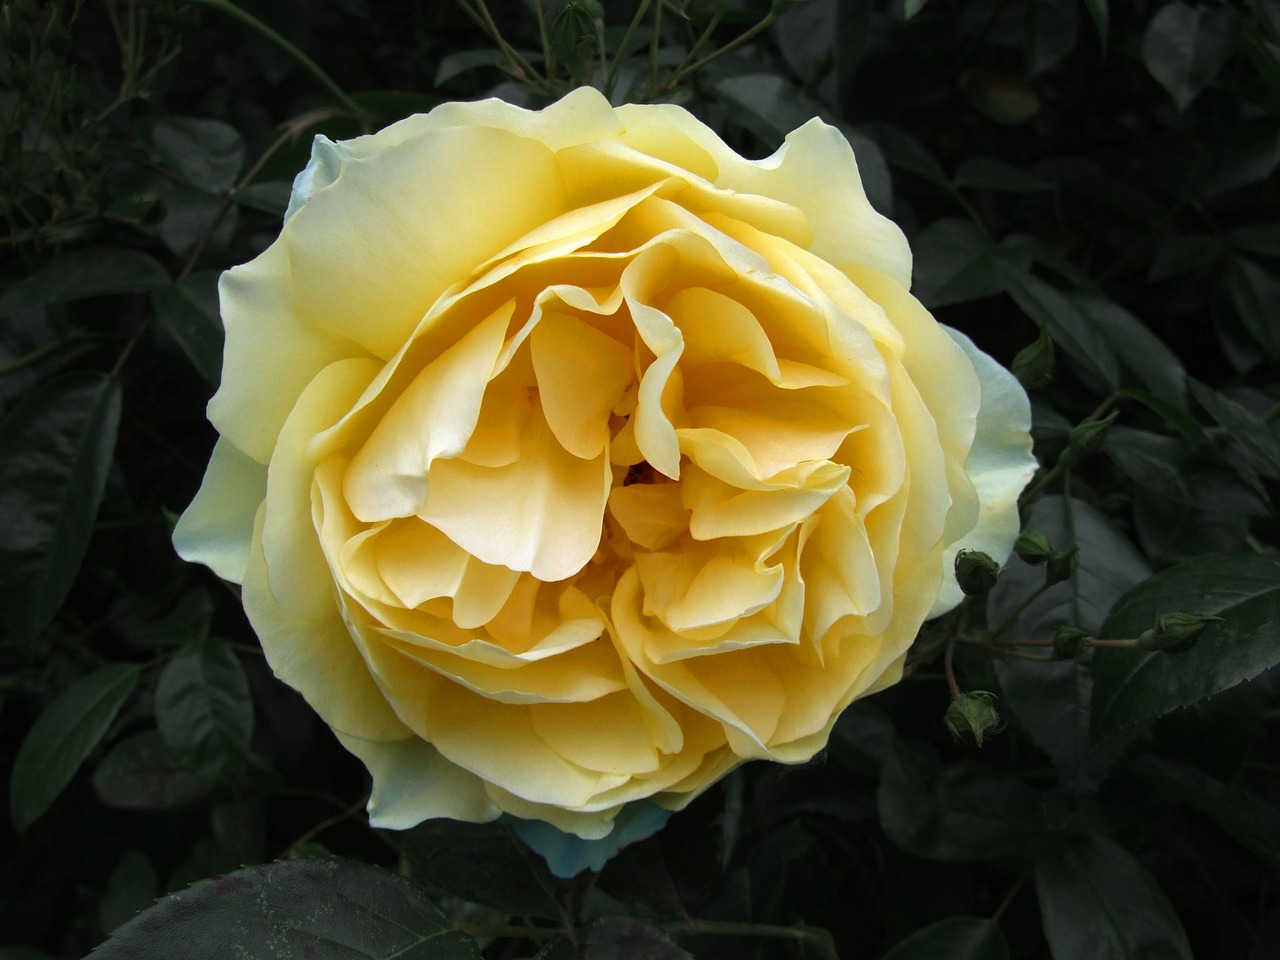 rose yellow cream free photo